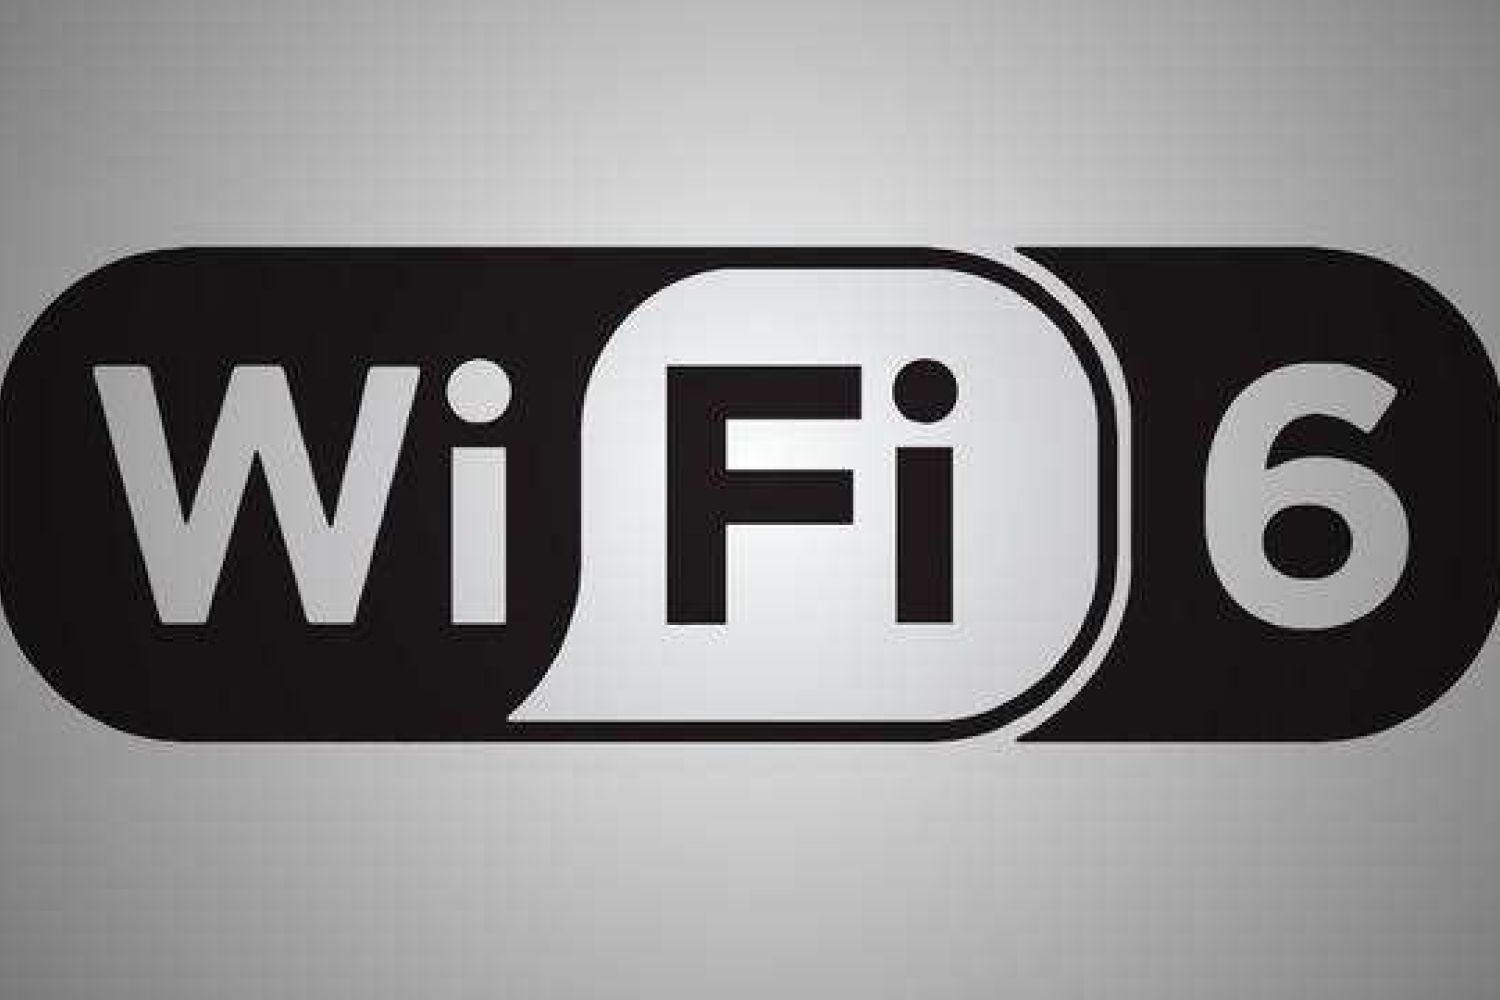 WiFi6你真的了解嘛？简单说一下吧